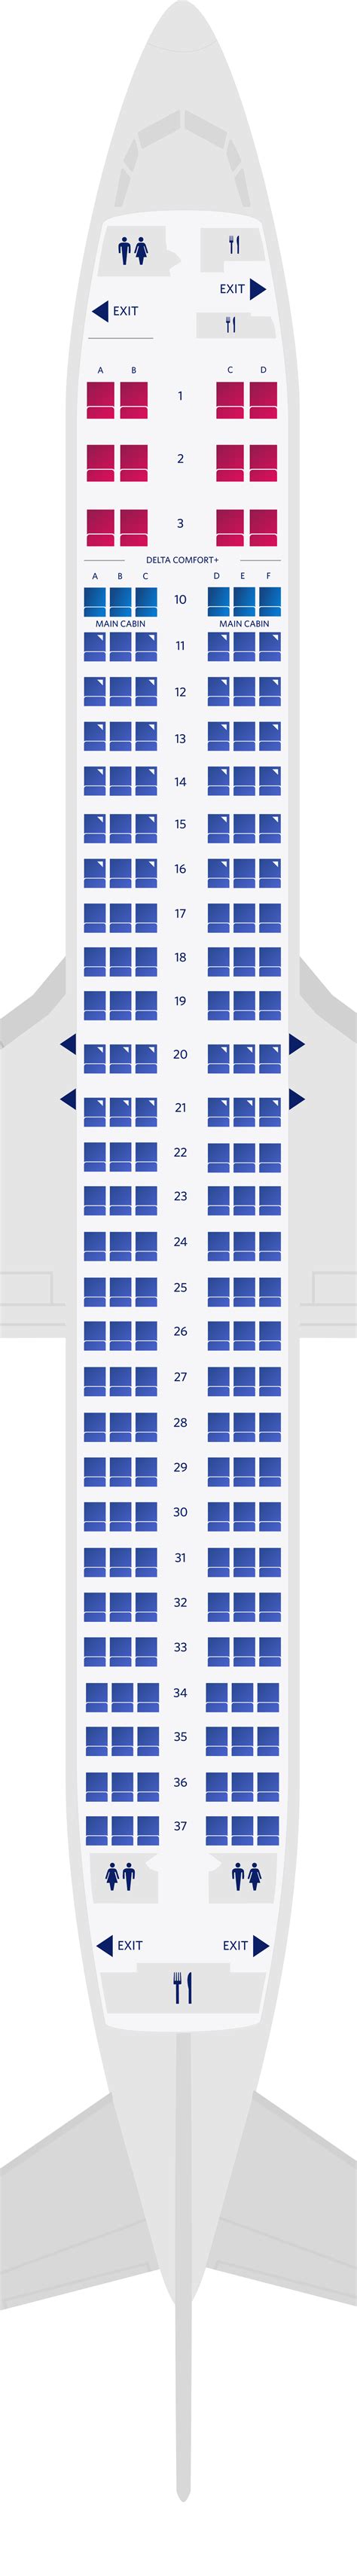 boeing 737 seat arrangement